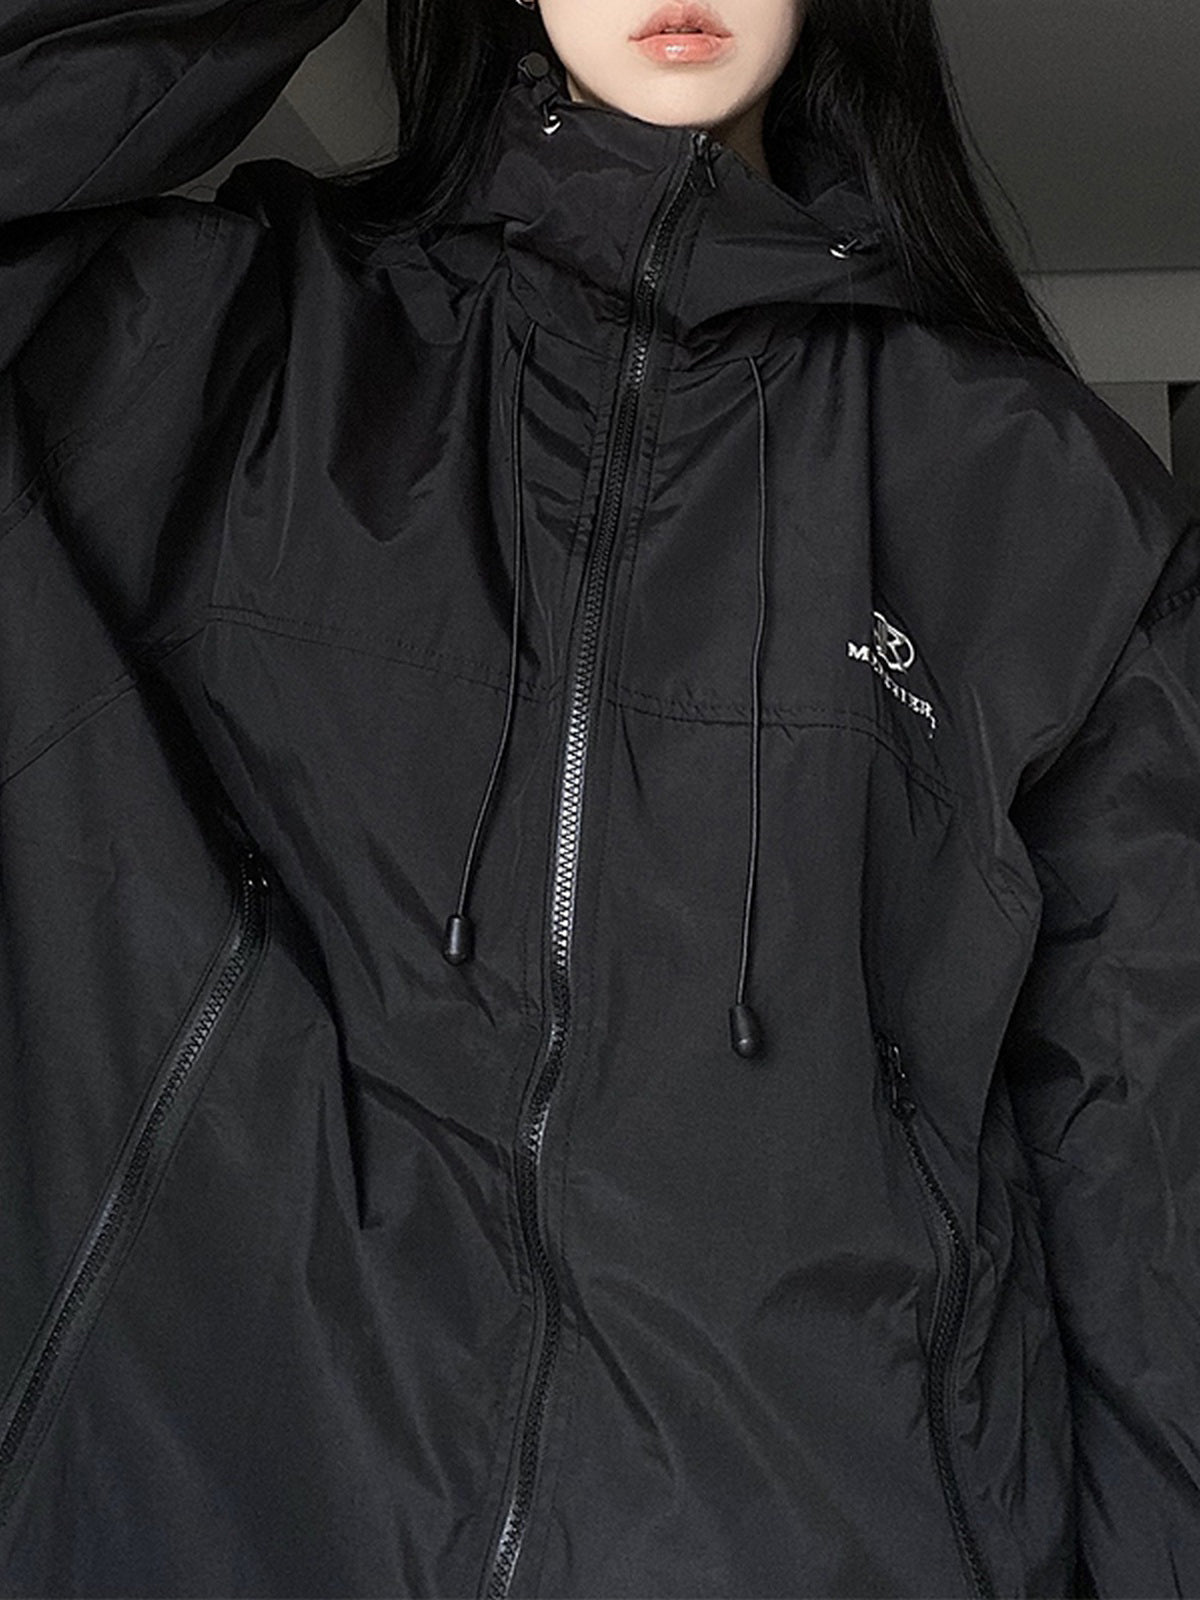 Retro Black Waterproof Oversize Outdoor Jacket with Hood